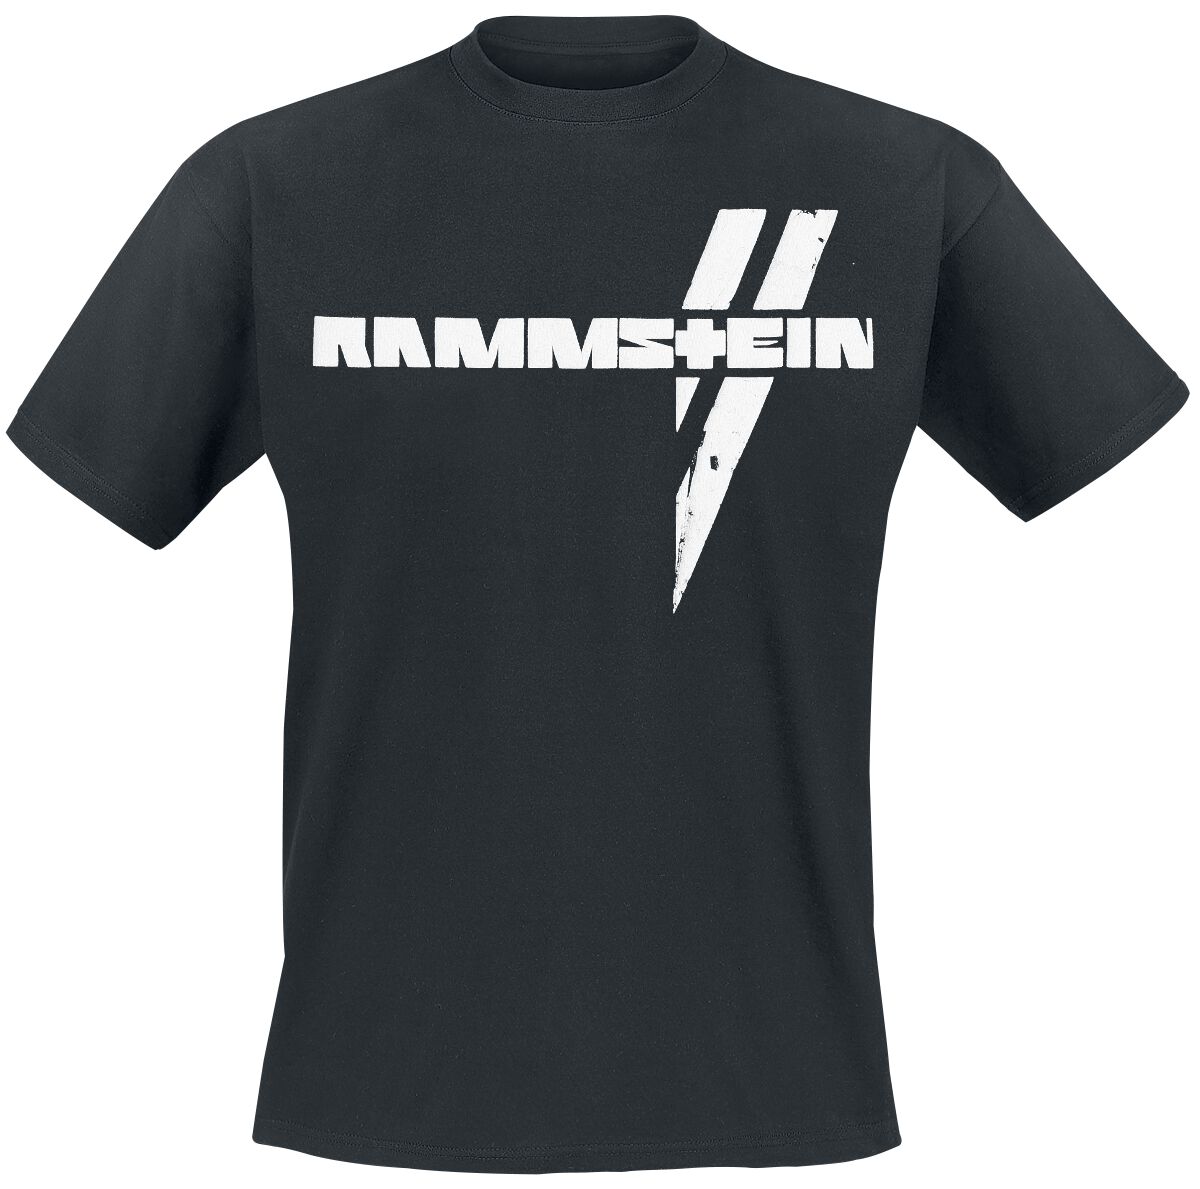 Rammstein T-Shirt - Weiße Balken - S bis 5XL - für Männer - Größe 5XL - schwarz  - Lizenziertes Merchandise!